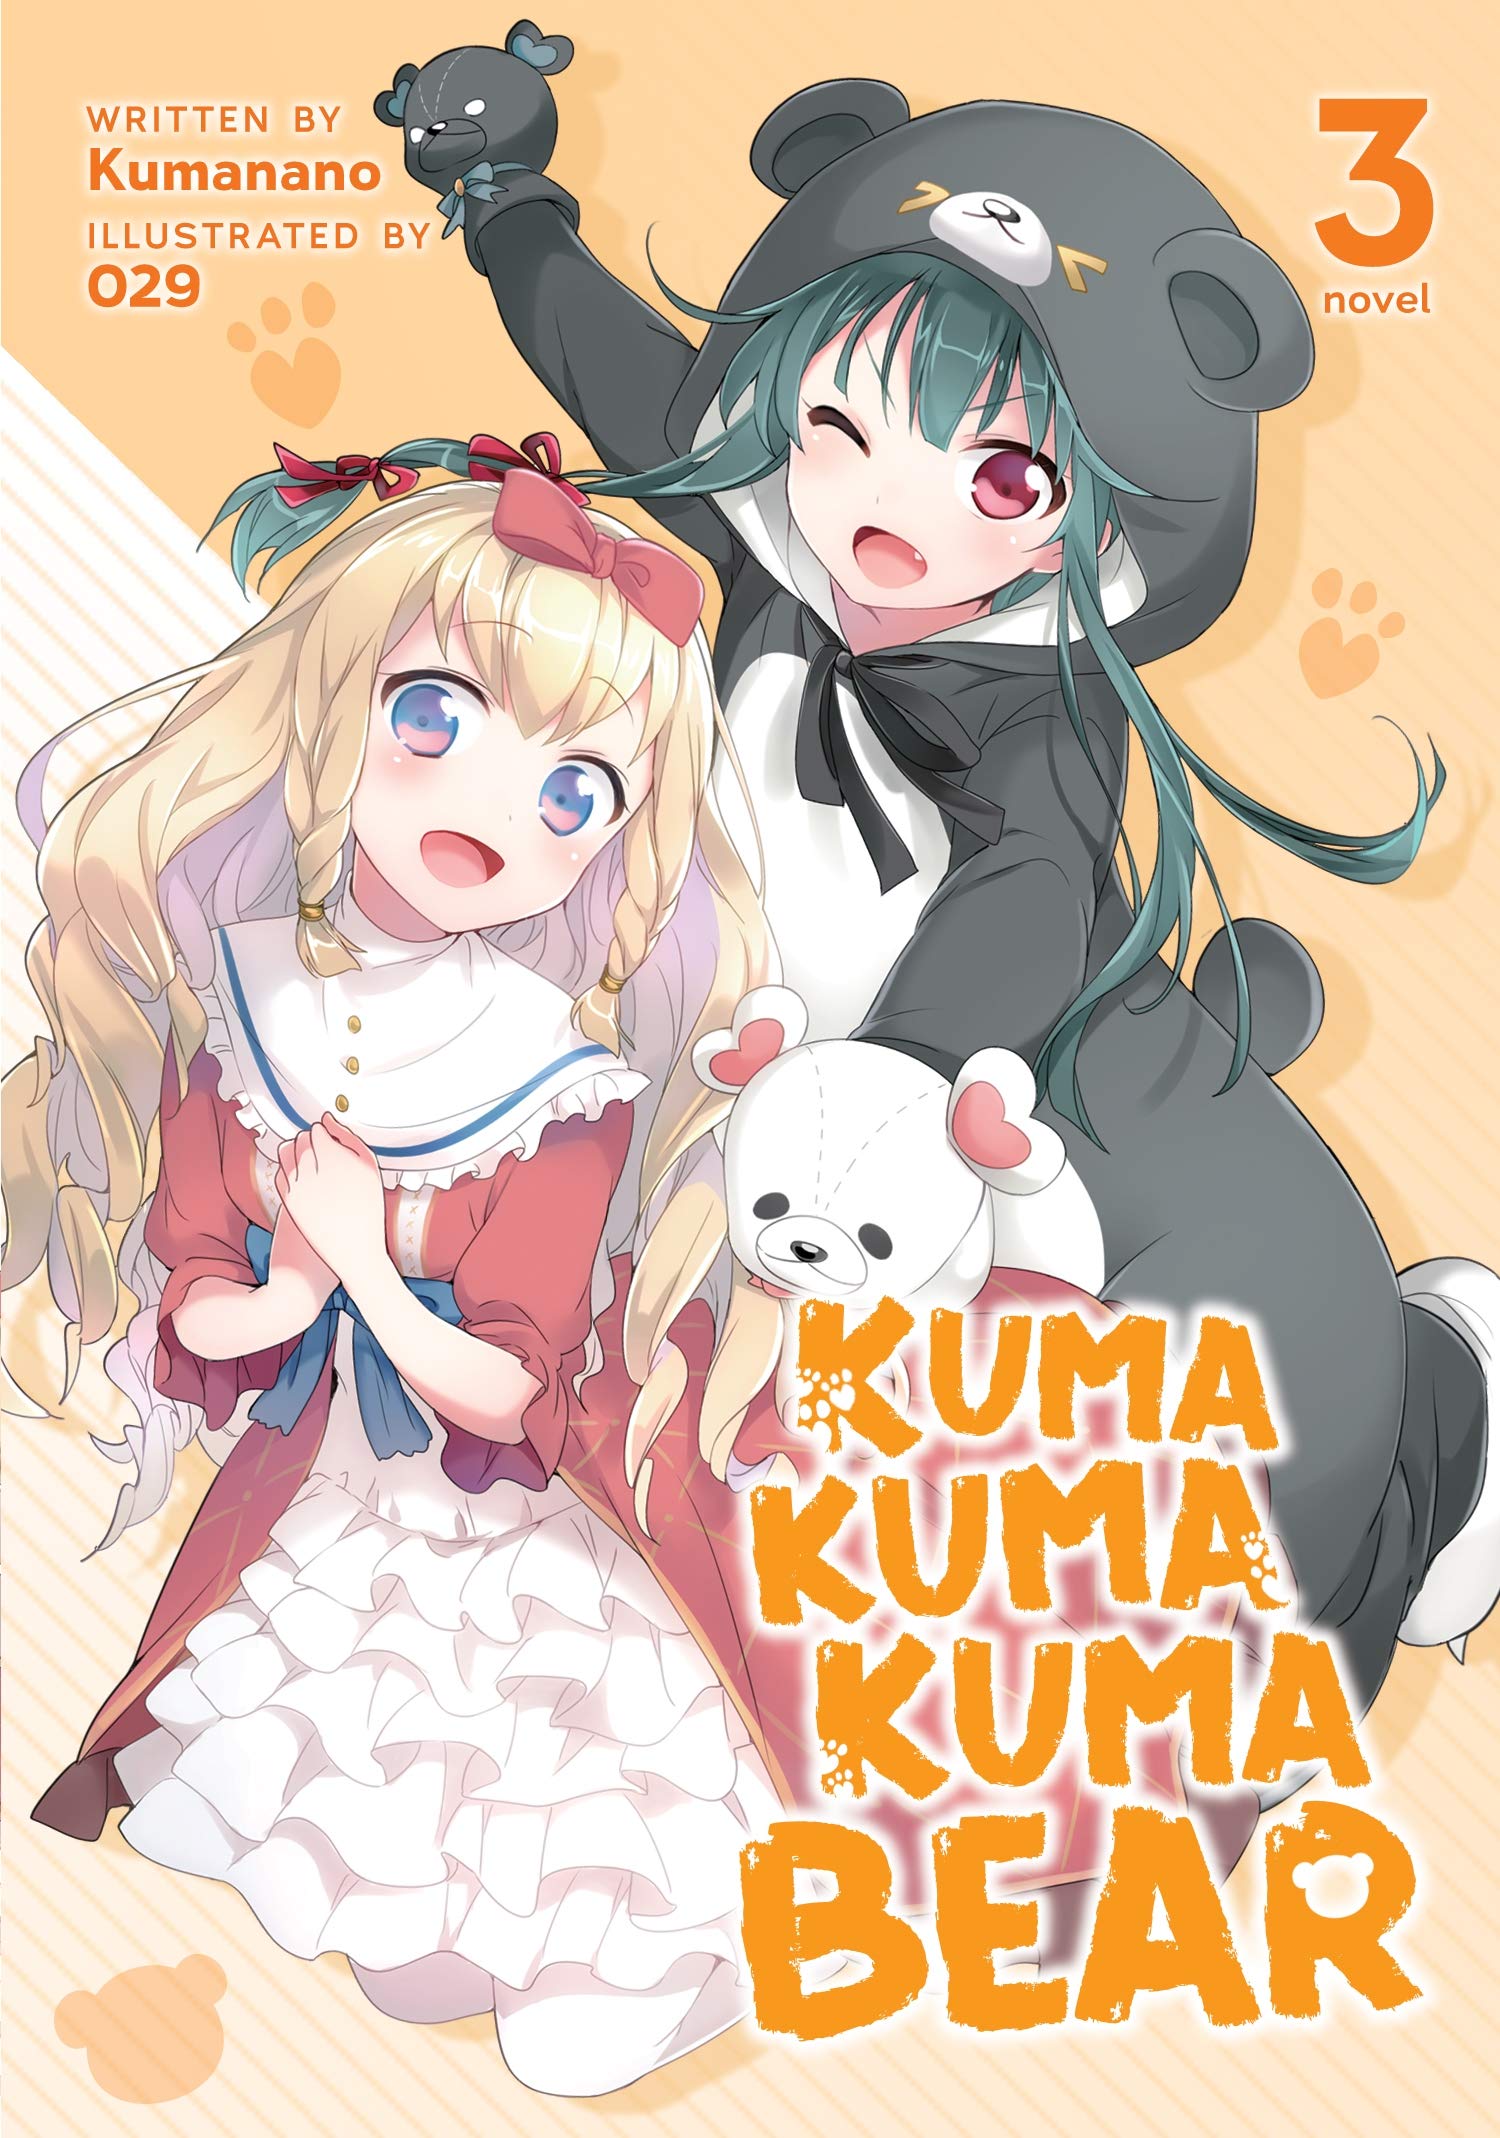 Kuma Kuma Kuma Bear (Light Novel) Vol. 3 (Kuma Kuma Kuma Bear (Light Novel), 3): Kumanano, 029: Books